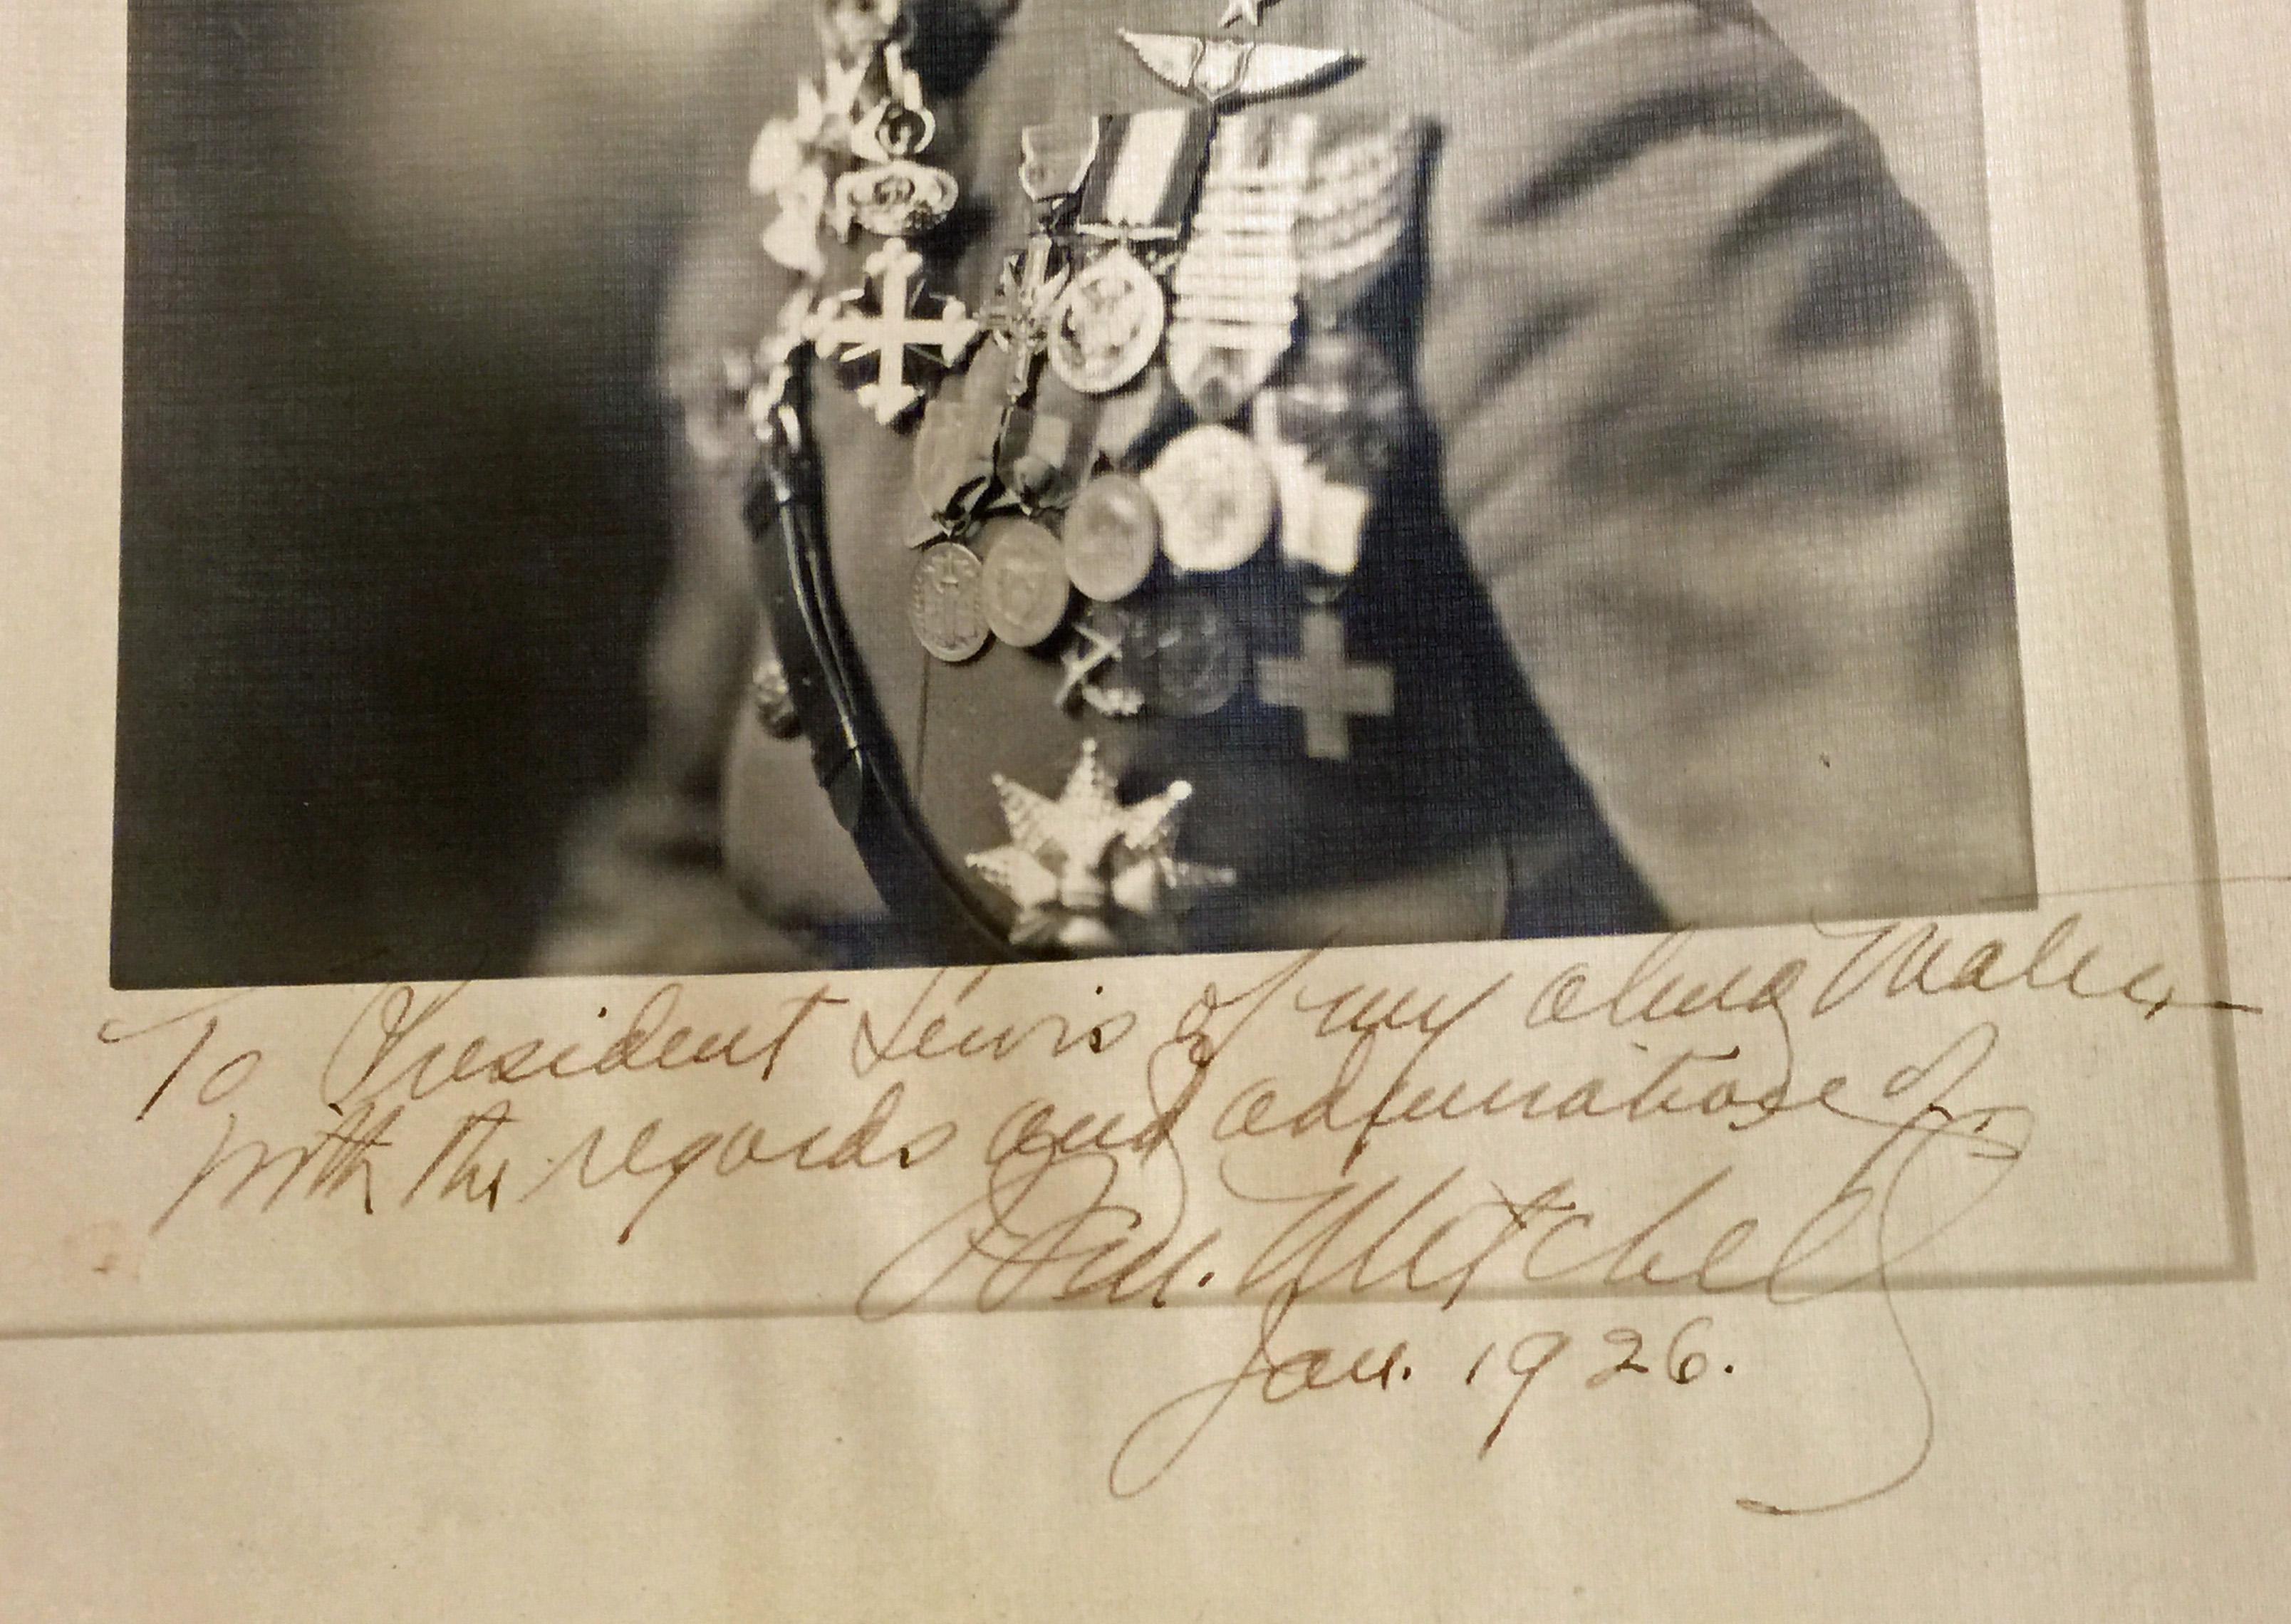 GENERAL BILLY MITCHELL - PHOTO SIGNÉE ET INSCRITE DATÉE DE JANVIER 1926 - Marron Portrait Photograph par Unknown